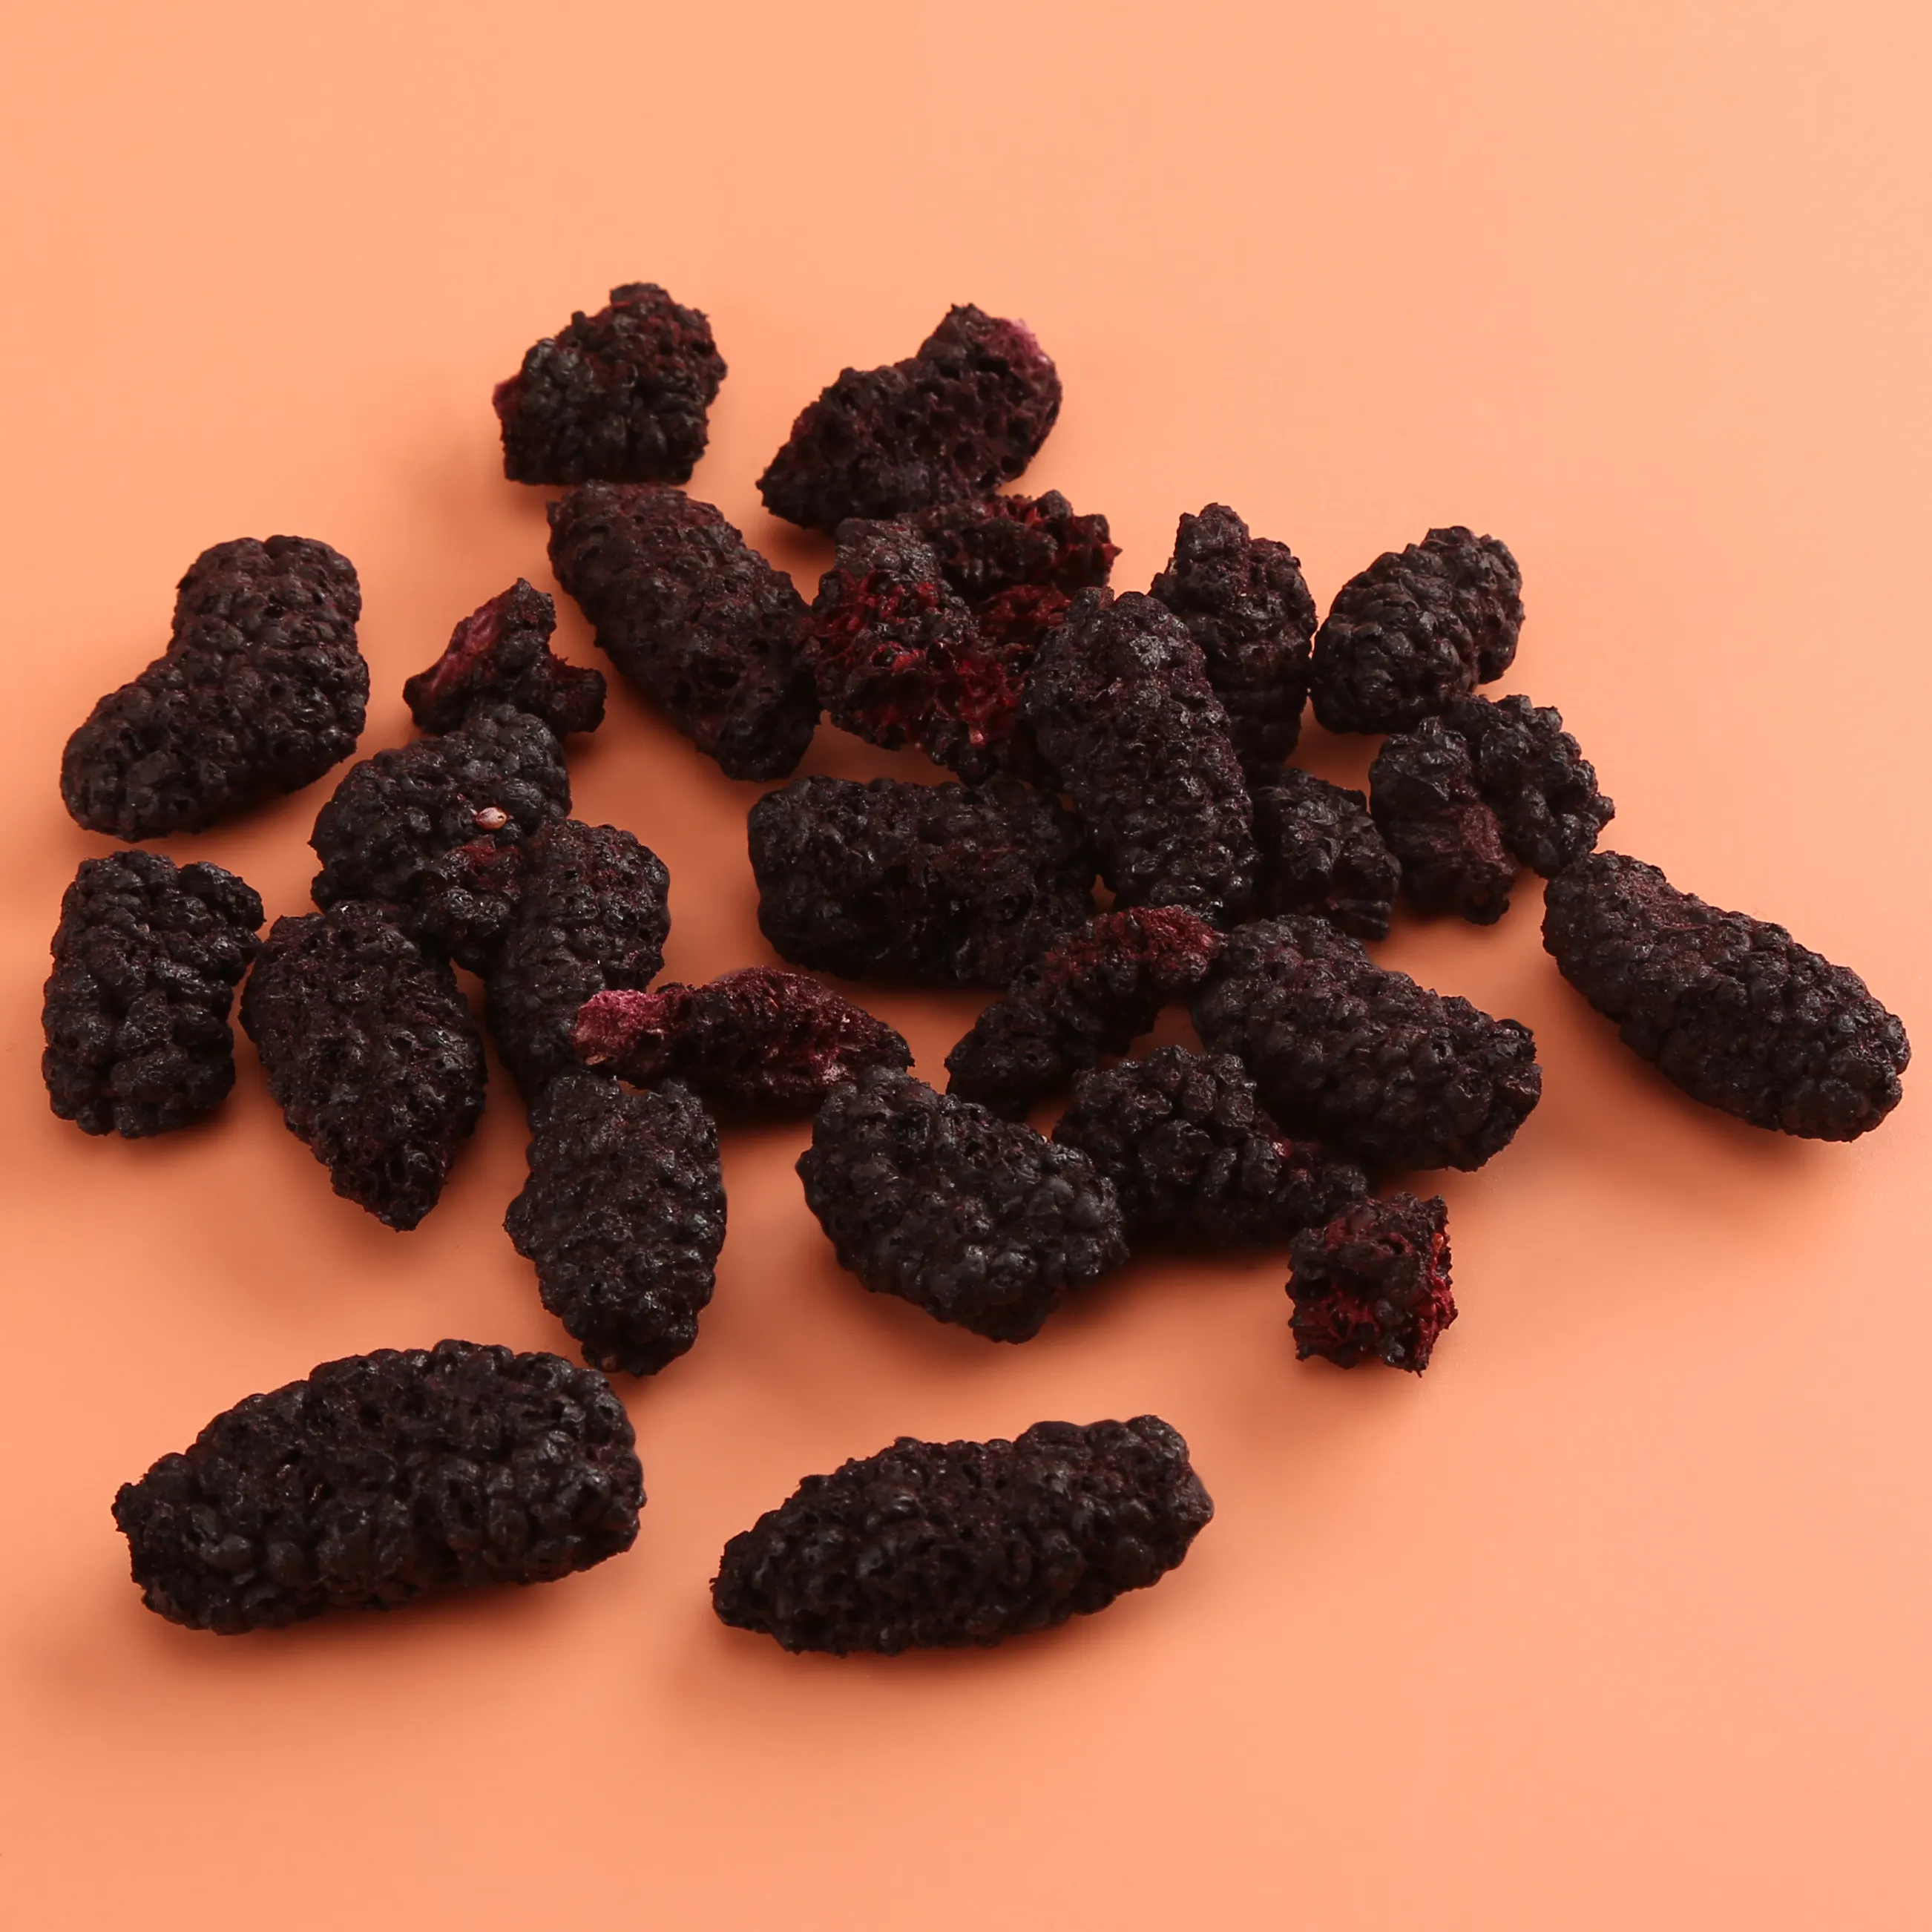 Guoyue atacado liofilizado Mulberry nutrição saudável azedo doces lanches fragrância crocante todo liofilizado frutas